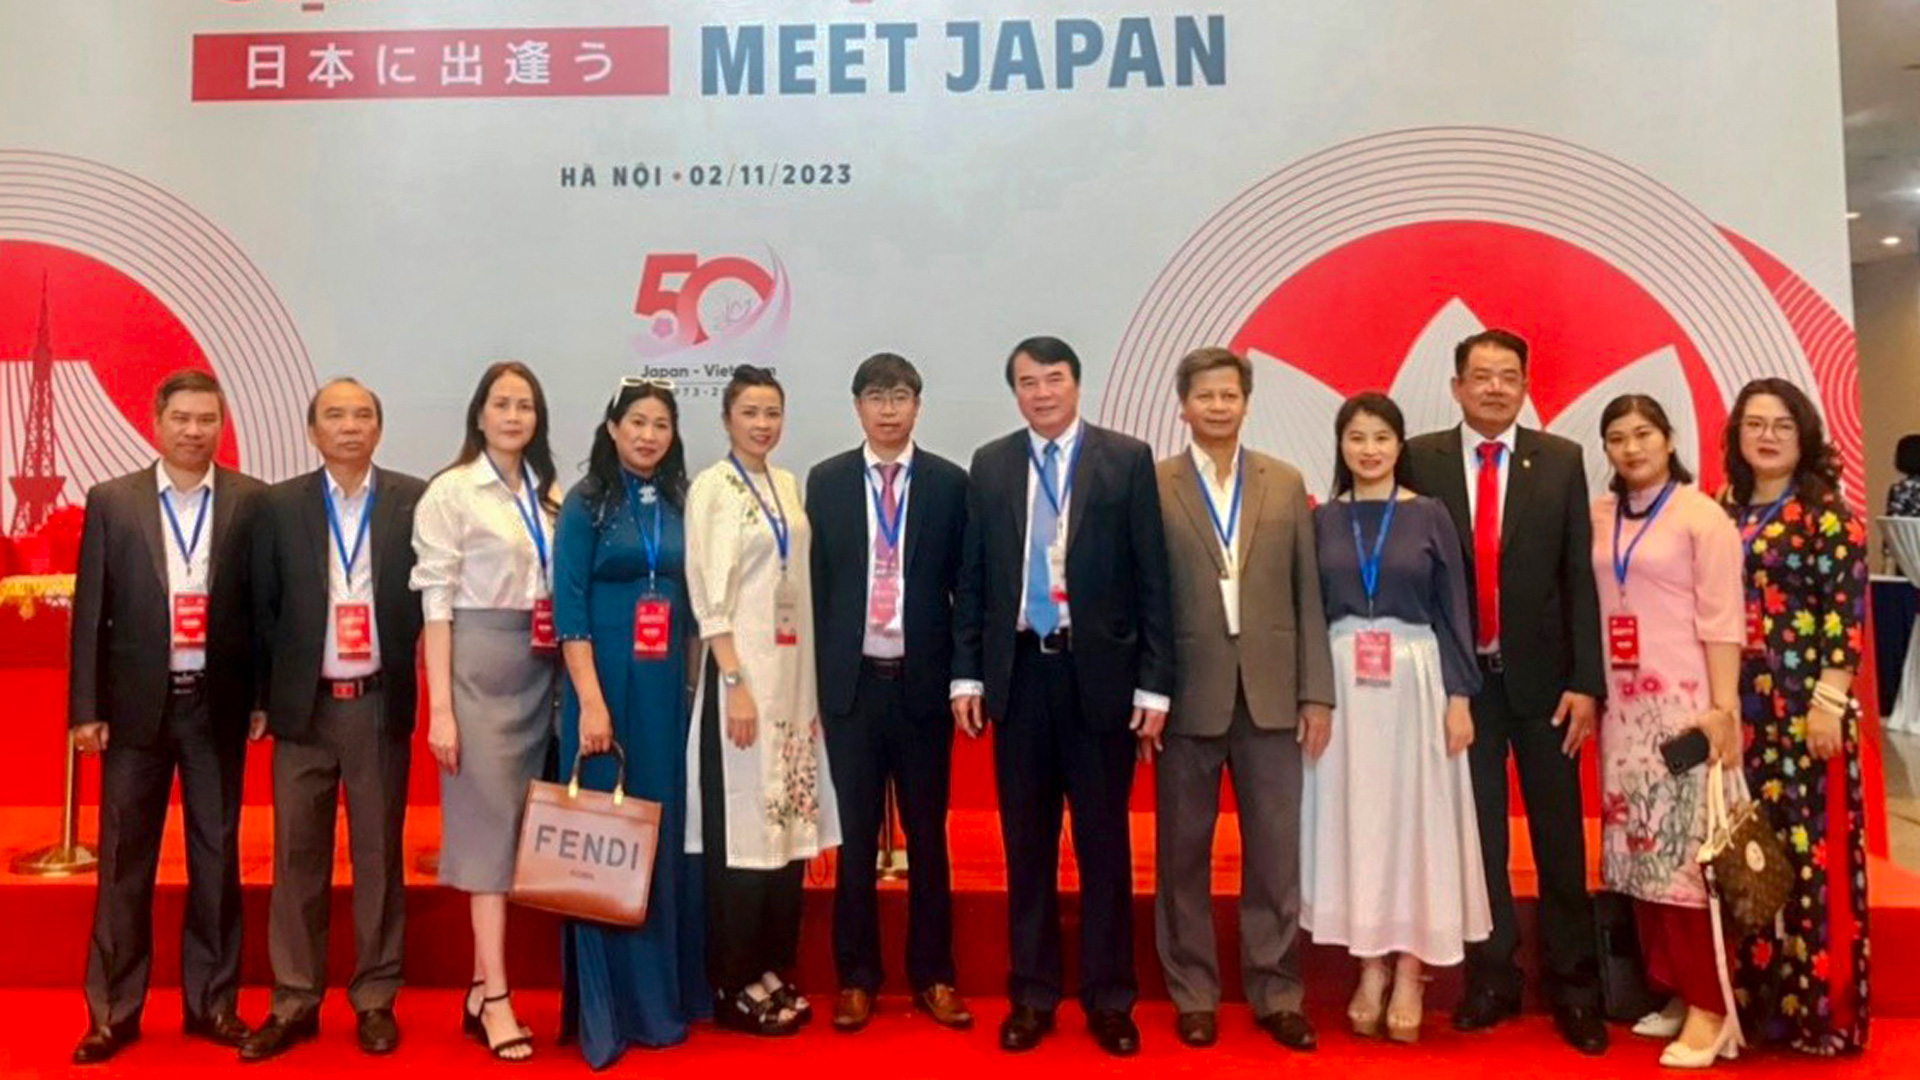 Đoàn công tác của tỉnh Lâm Đồng tham dự Hội nghị “Gặp gỡ Nhật Bản” cùng Phó Chủ tịch UBND tỉnh Phạm S